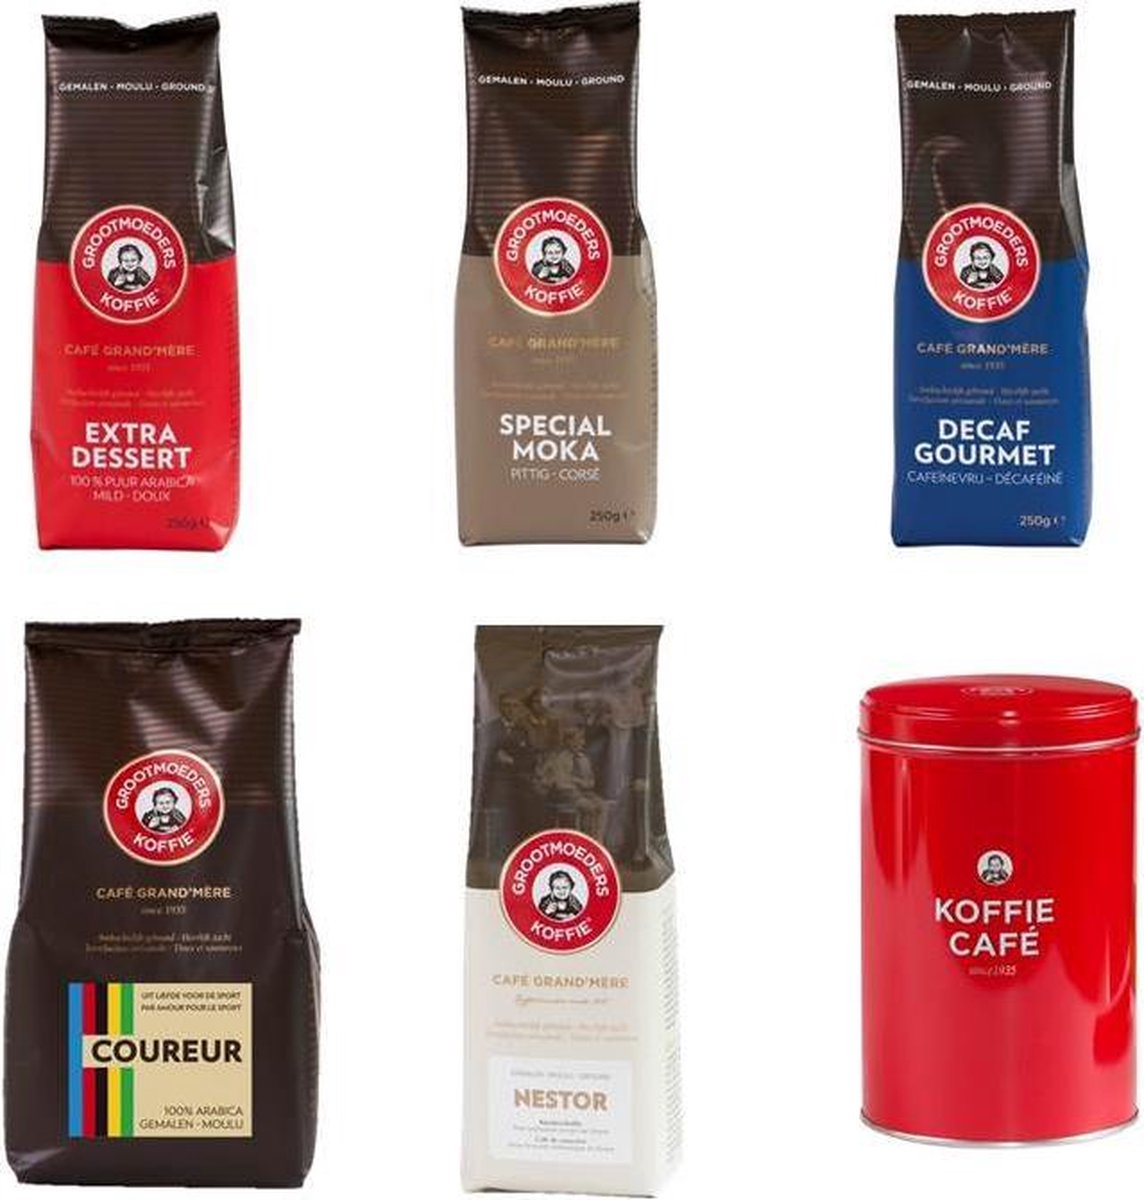 Grootmoeders Koffie - Proefpakket gemalen - 5 soorten + koffieblik